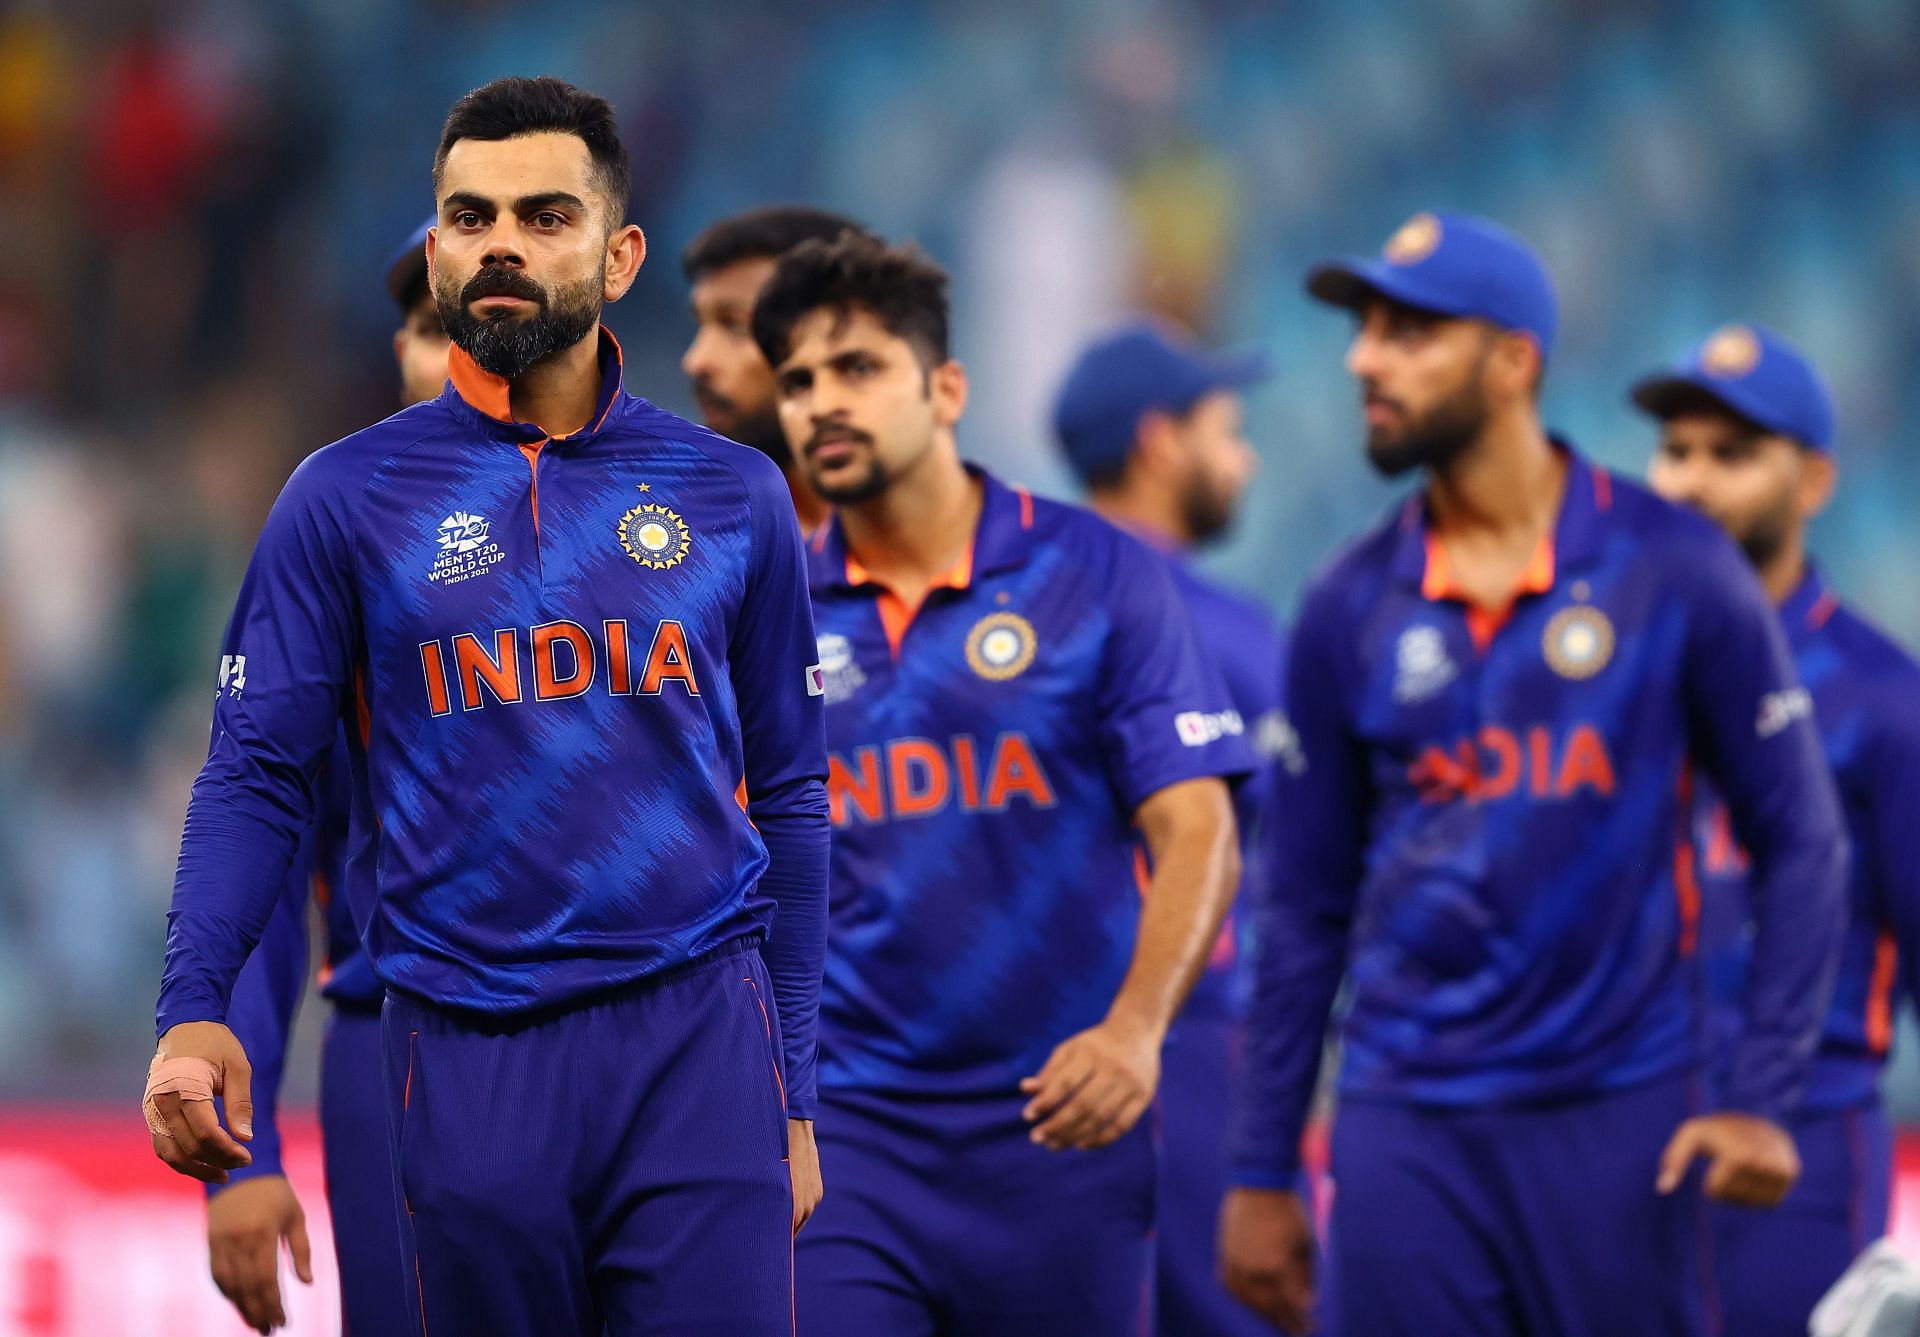 भारत के खराब प्रदर्शन के लिए आईपीएल को निशाना बनाया जा रहा है 